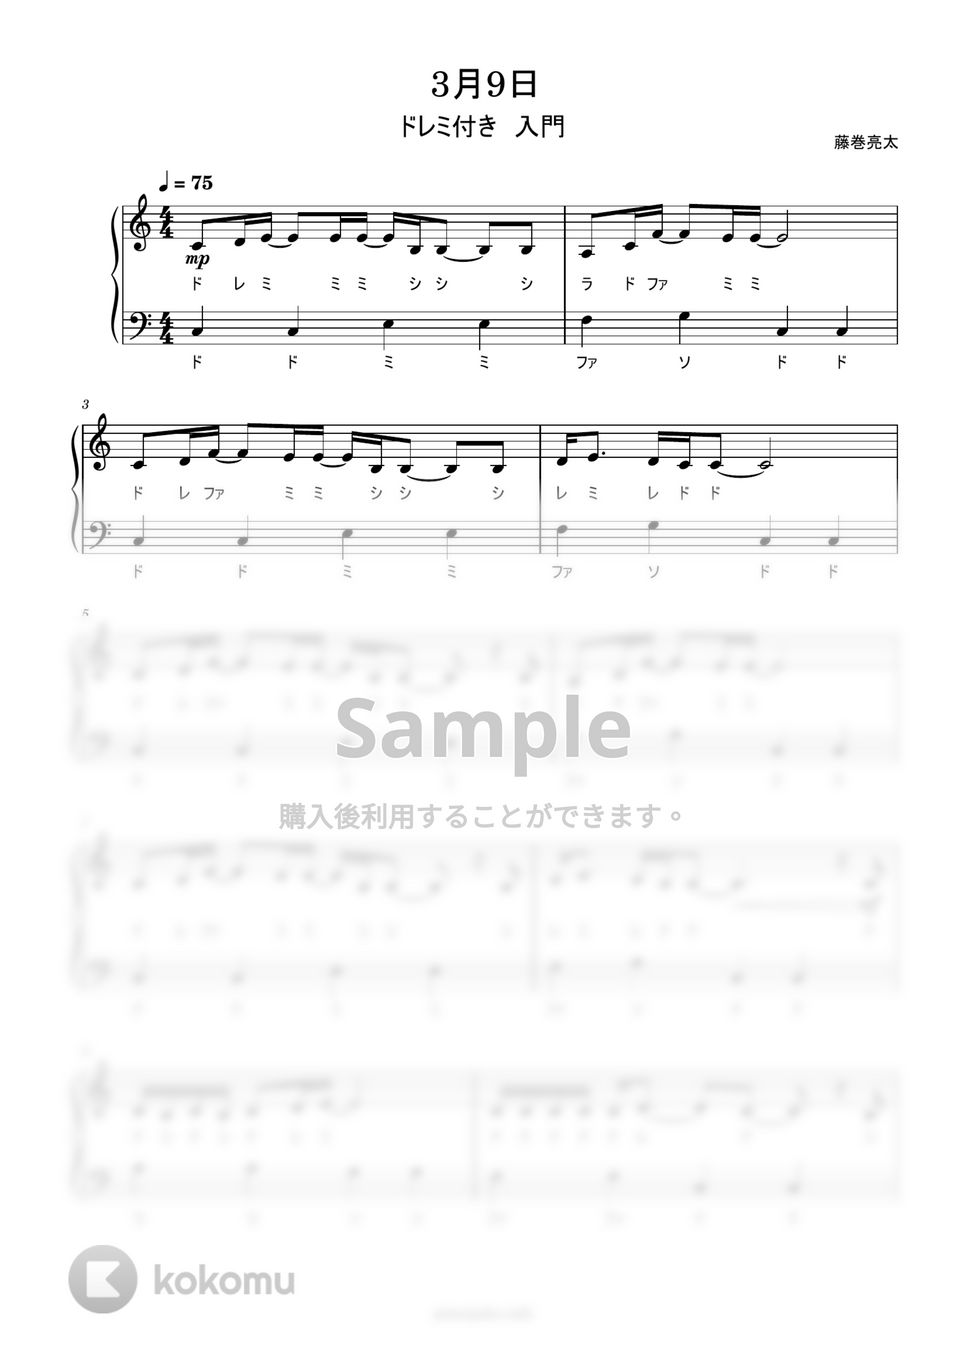 レミオロメン - 3月9日 (ドレミ付き簡単楽譜) by ピアノ塾